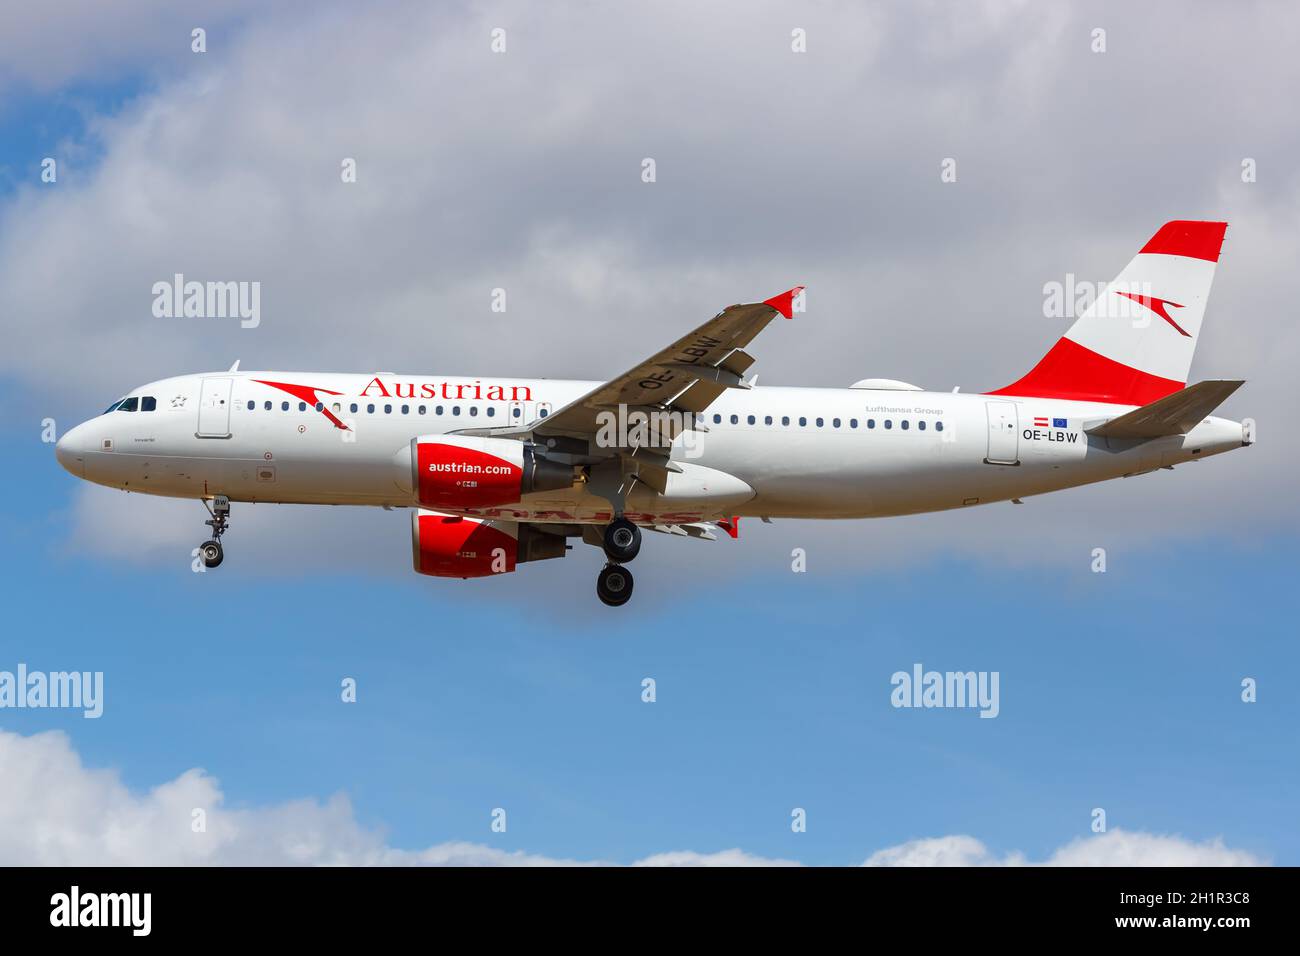 Londres, Royaume-Uni - 1er août 2018 : avion Airbus A320 d'Austrian Airlines à l'aéroport de Londres Heathrow (LHR) au Royaume-Uni. Banque D'Images